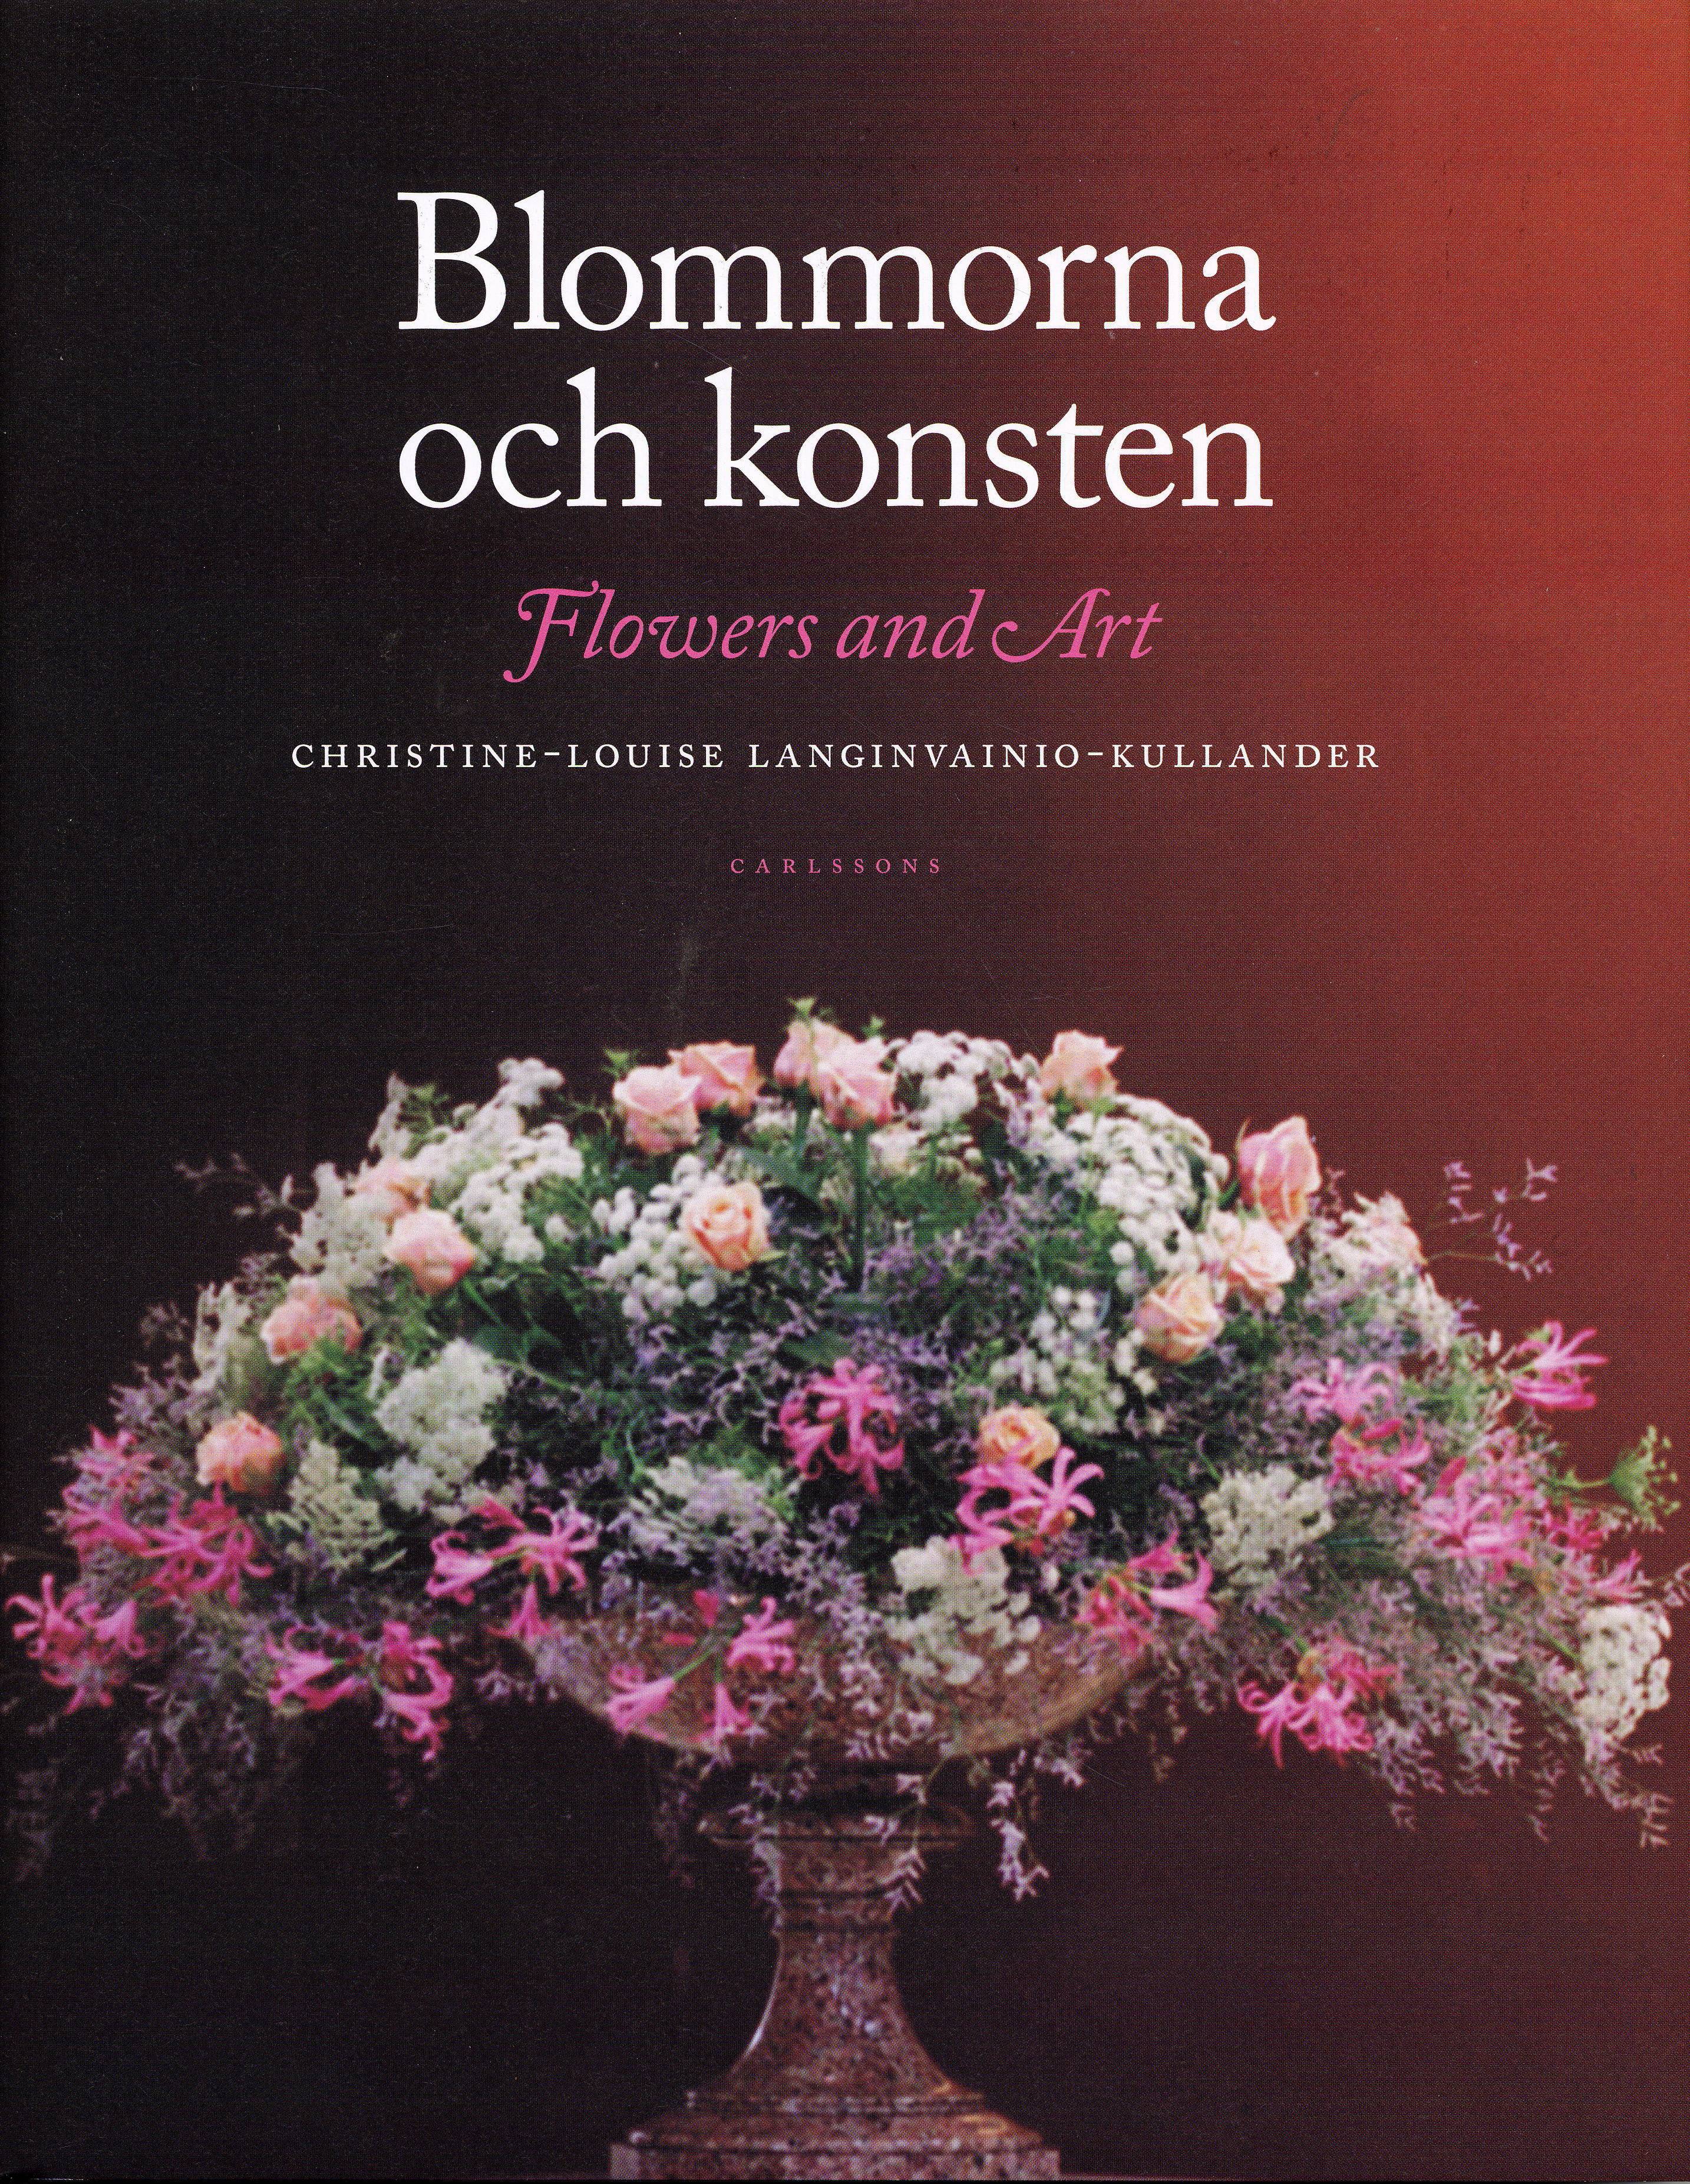 Blommorna och konsten/Flowers and art